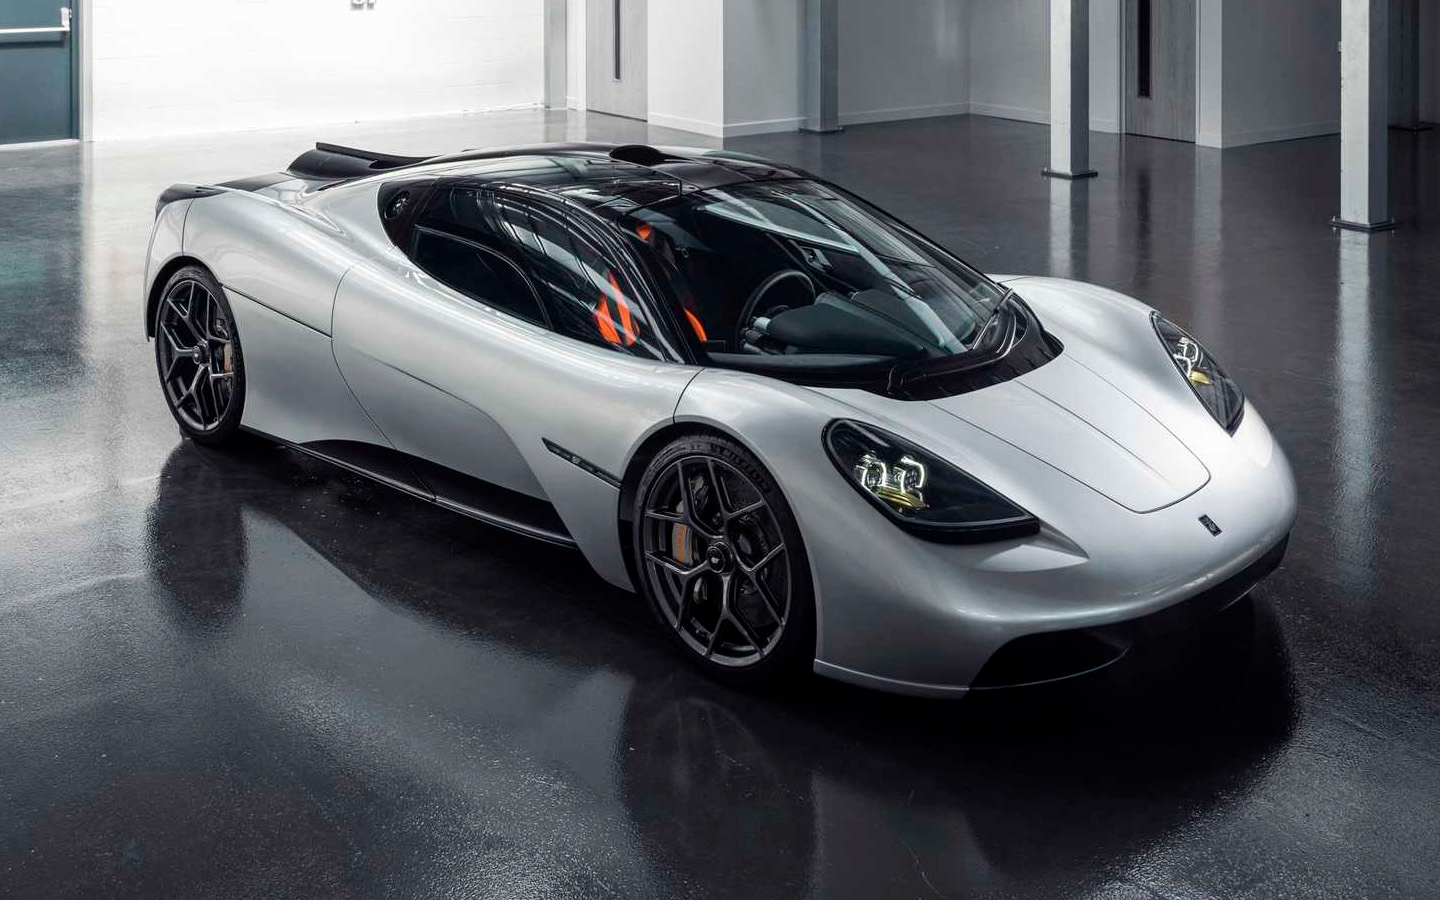 Создатель McLaren F1 выпустил сверхлегкий суперкар за 3 млн долларов